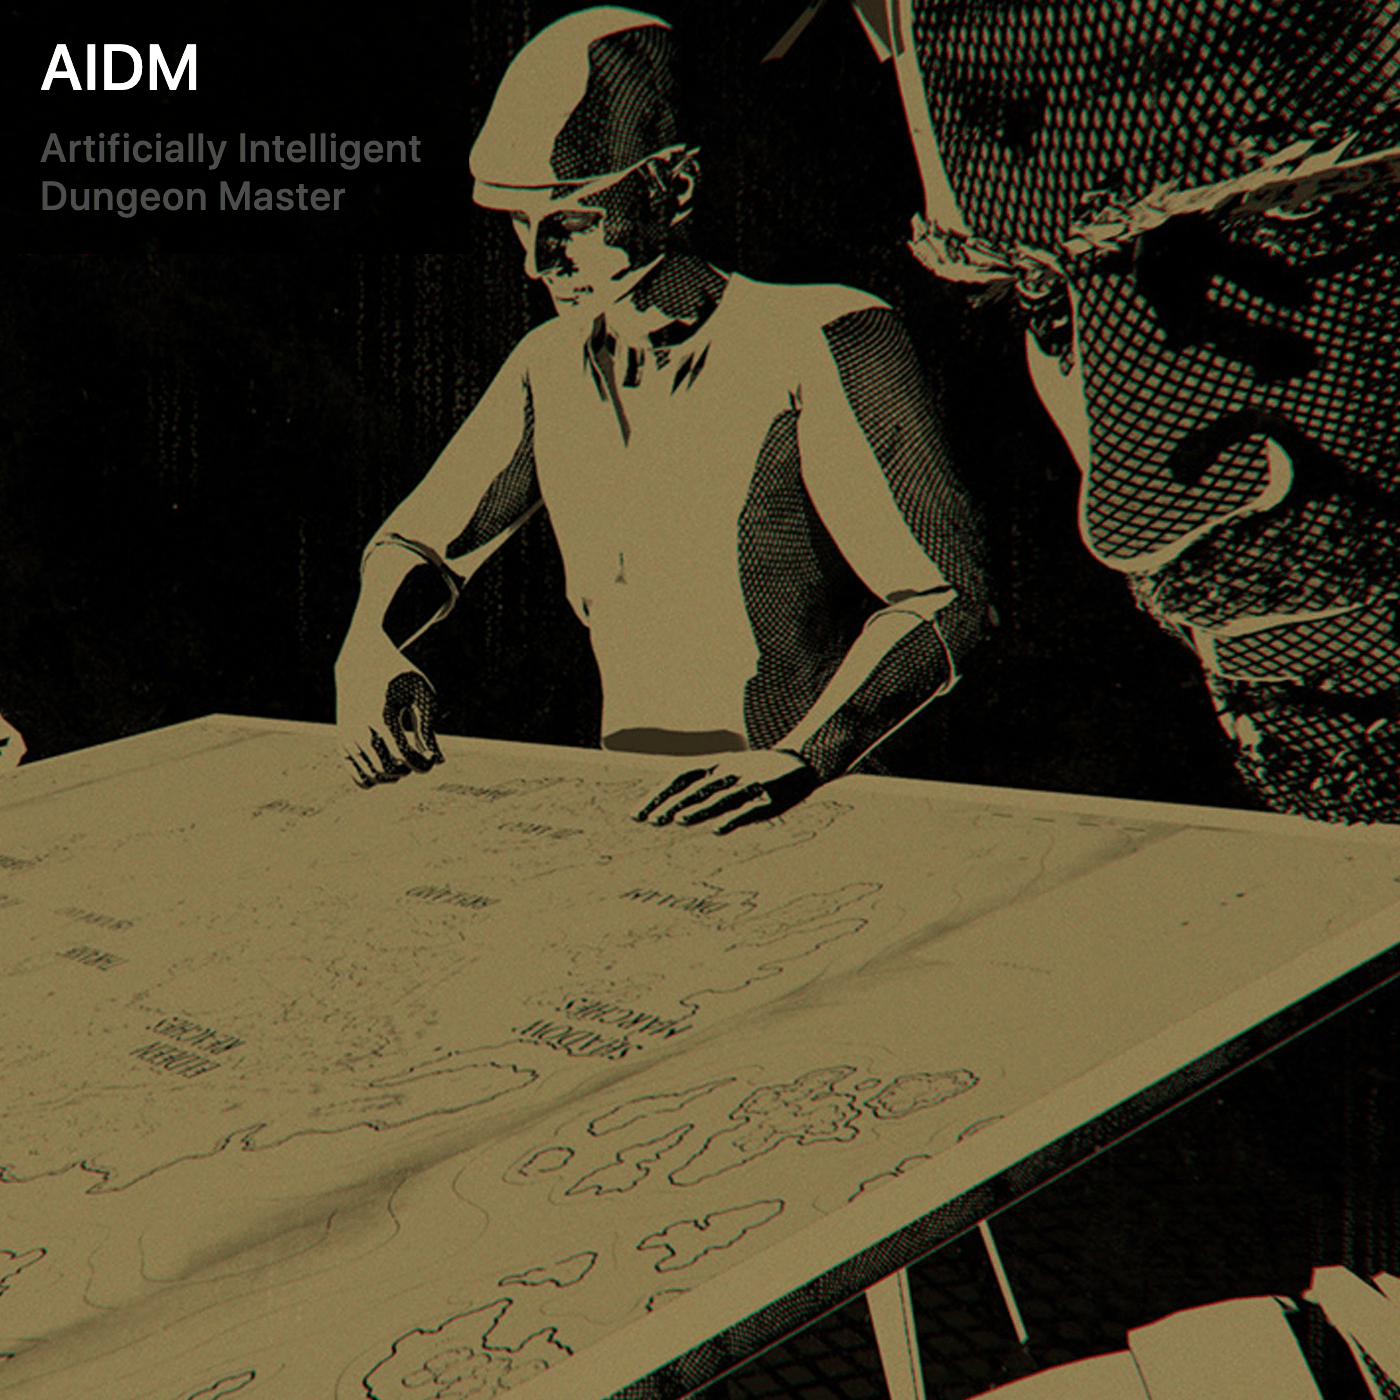 AIDM: Artificially Intelligent Dungeon Master